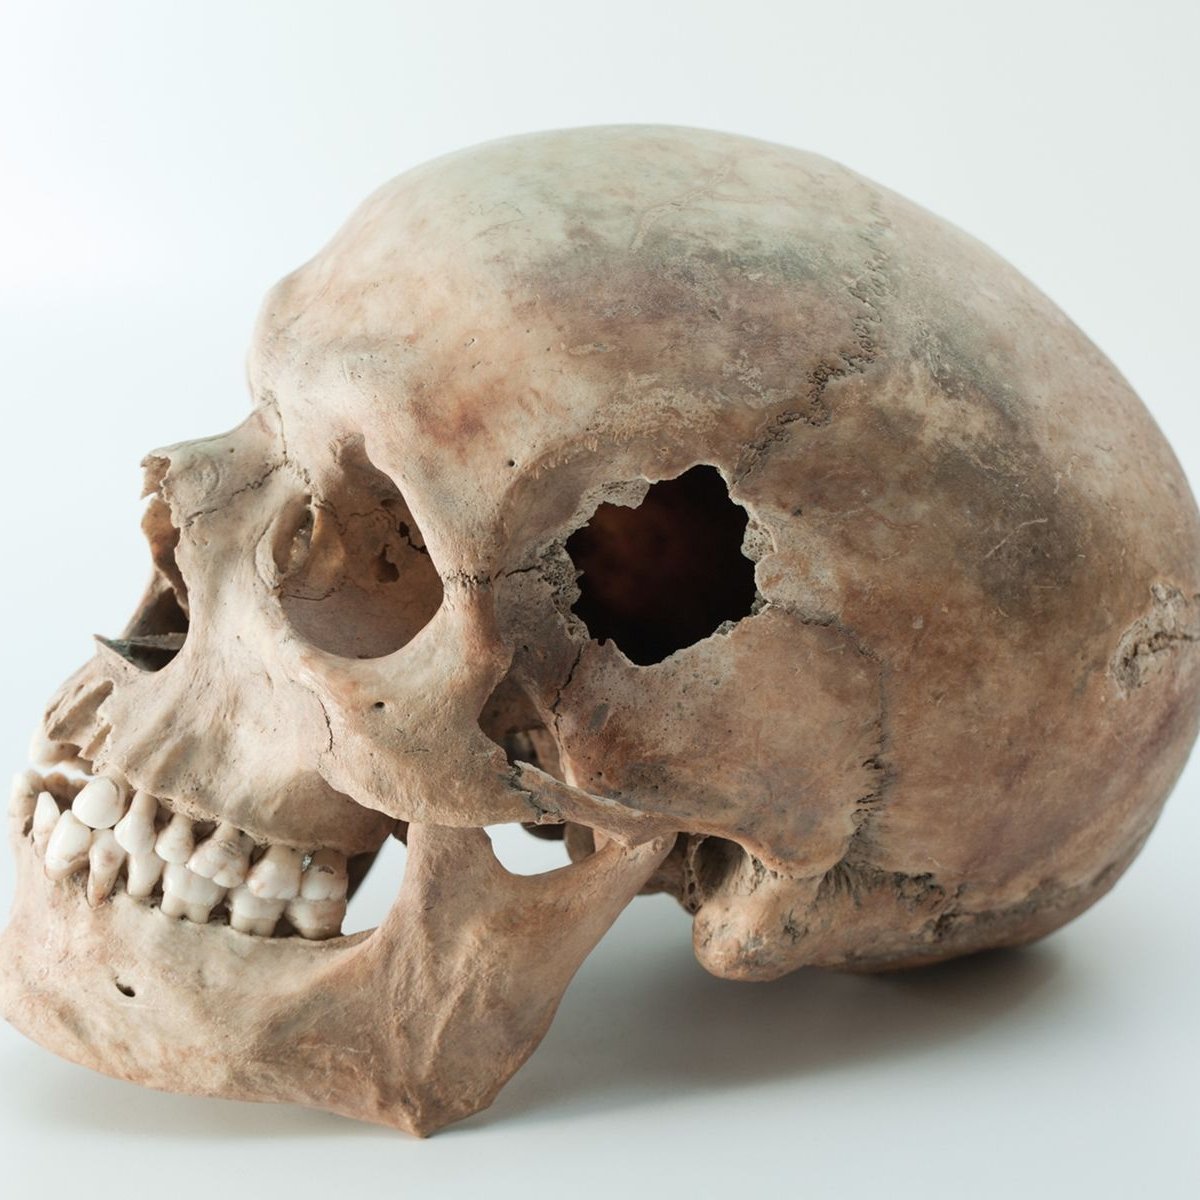 Cirurgia neolítica: por que (e como) europeus antigos andavam com um buraco no crânio?